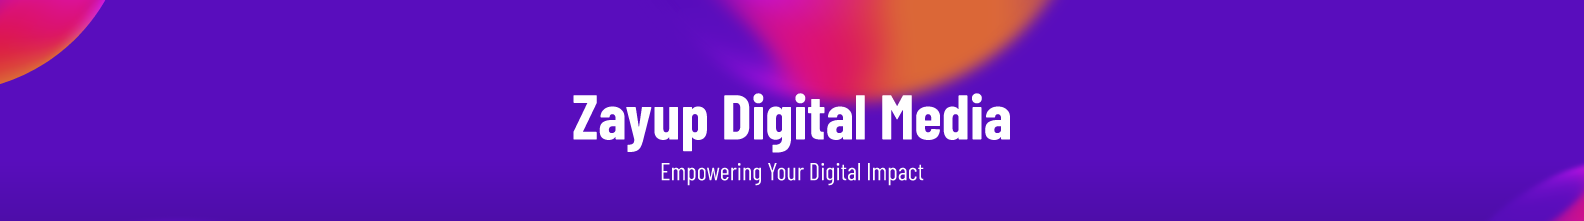 Zayup Digital Media's profile banner